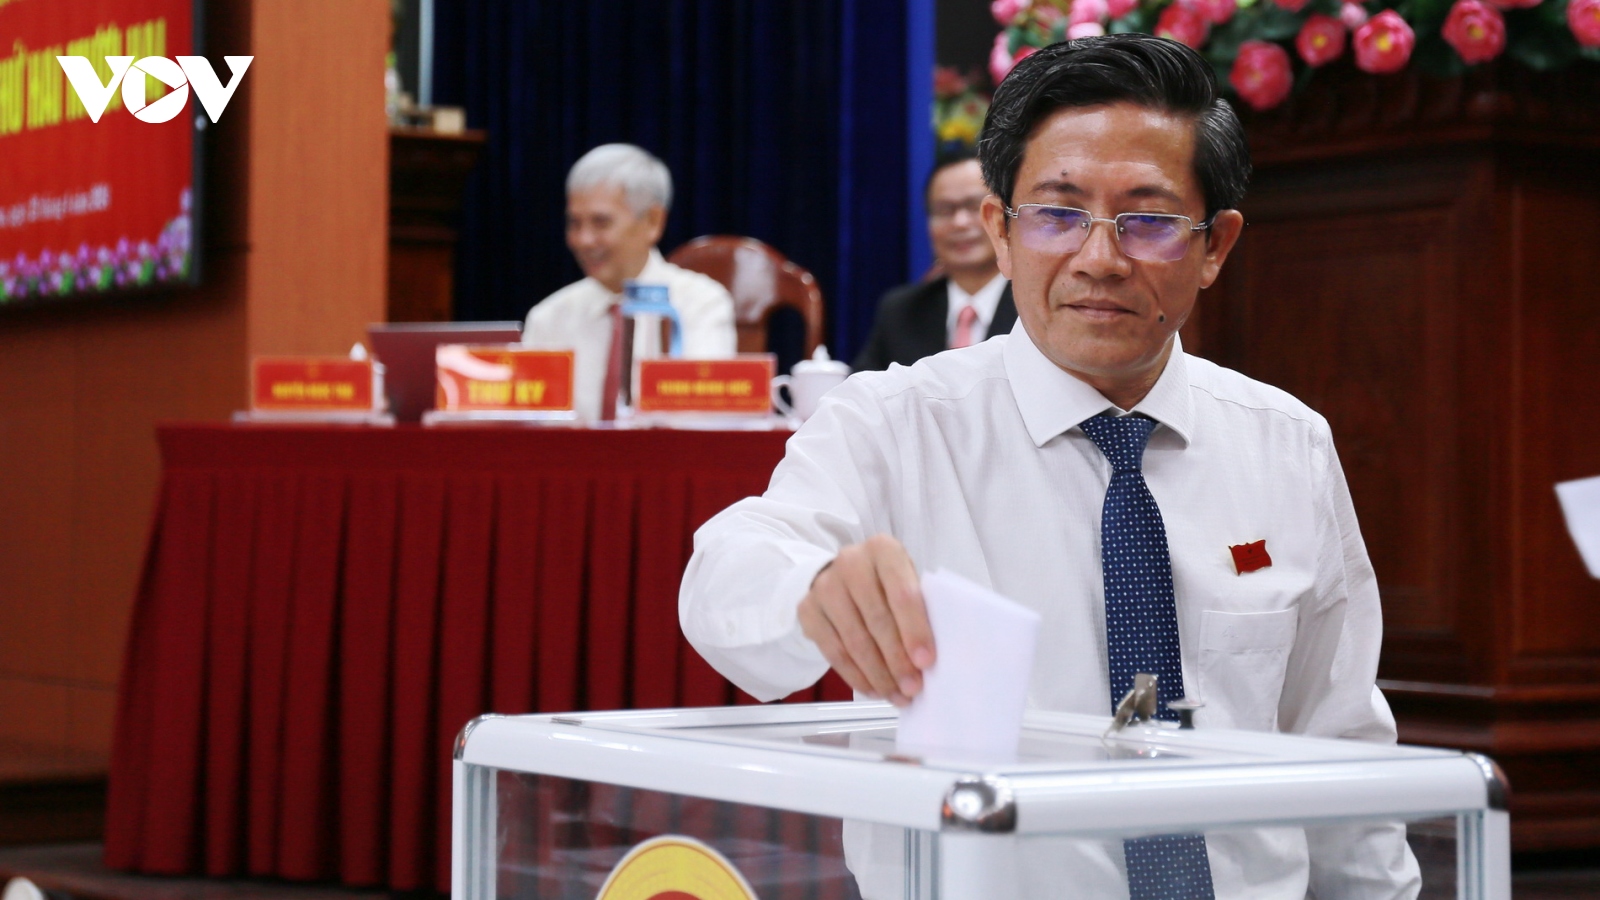 Bí thư Thành ủy Tam Kỳ được bầu làm Phó Chủ tịch UBND tỉnh Quảng Nam